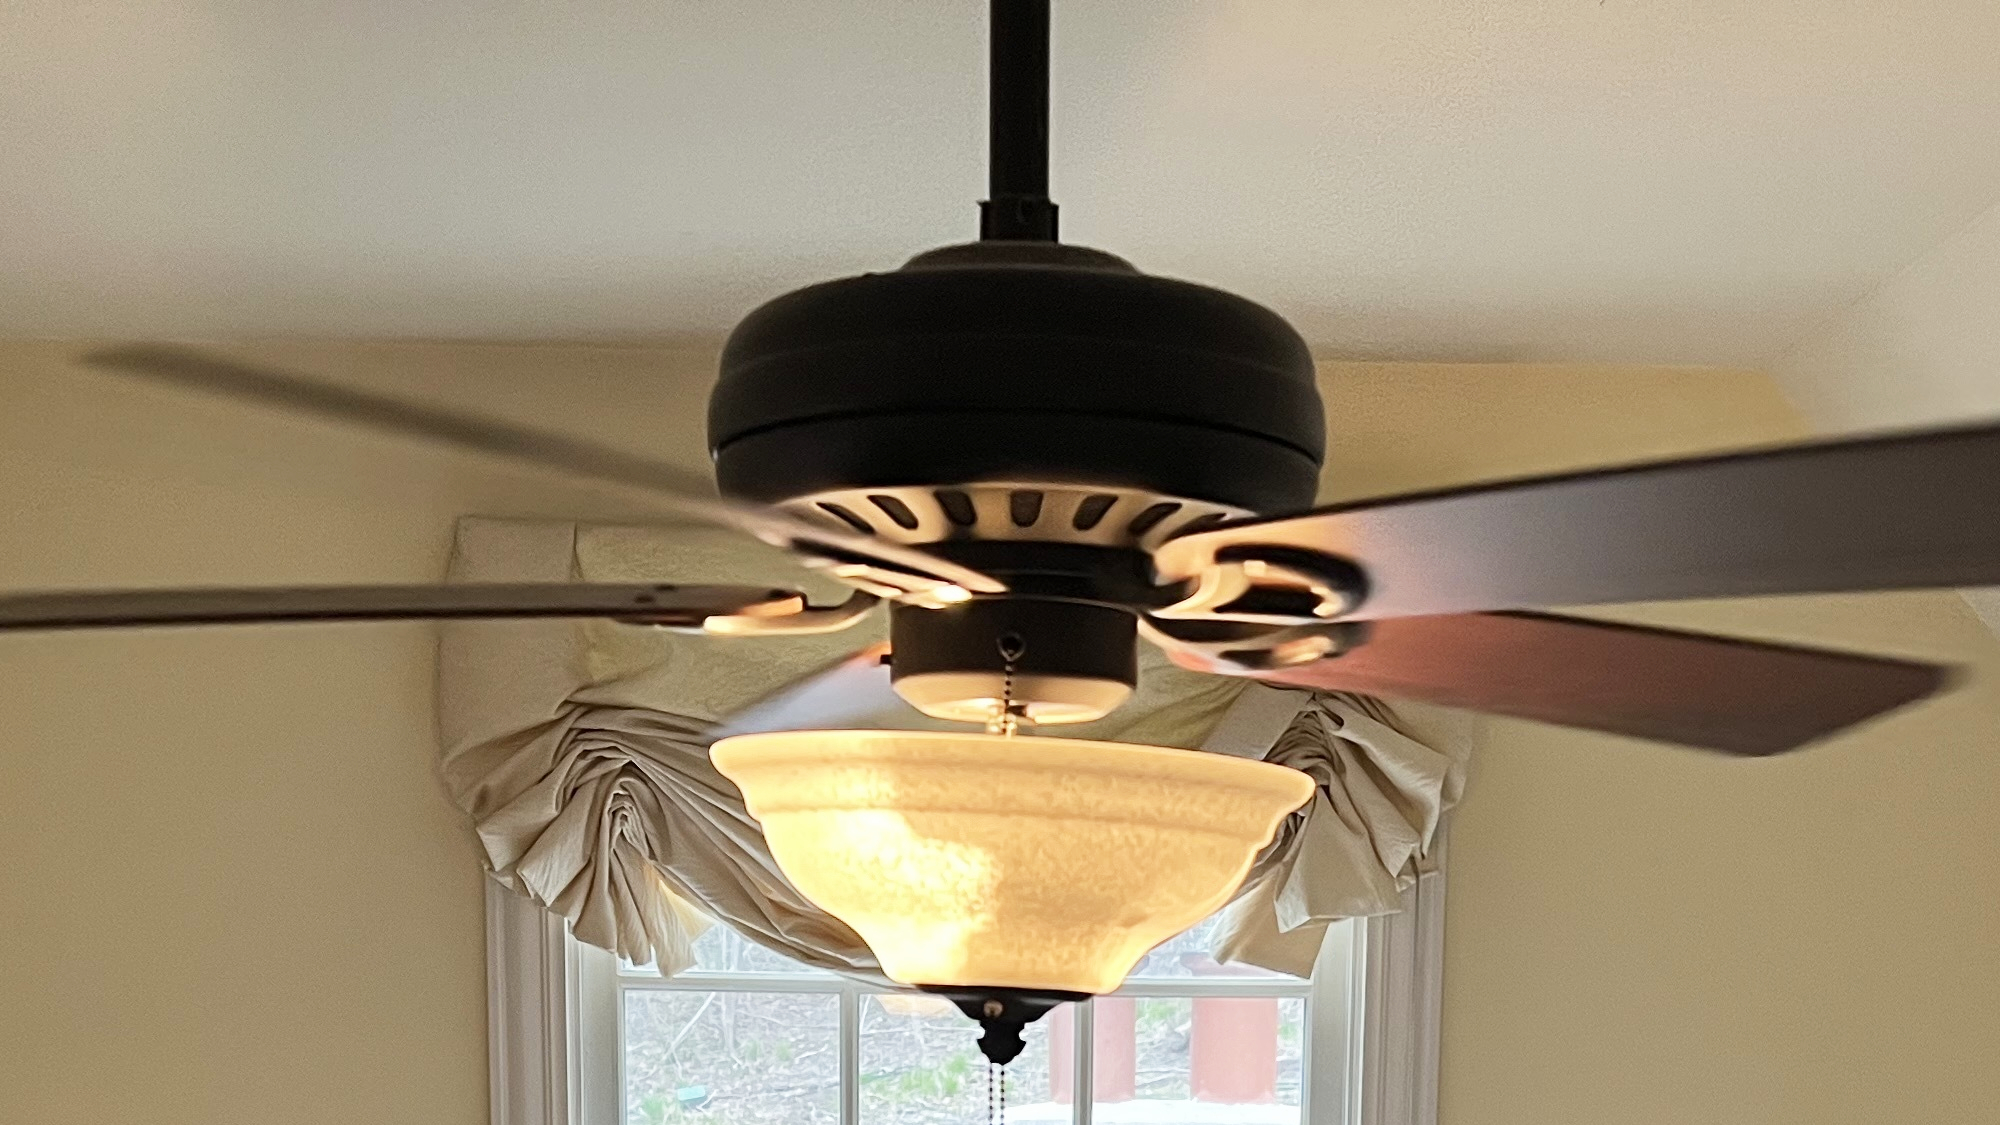 Ceiling fan with E12 smart lights